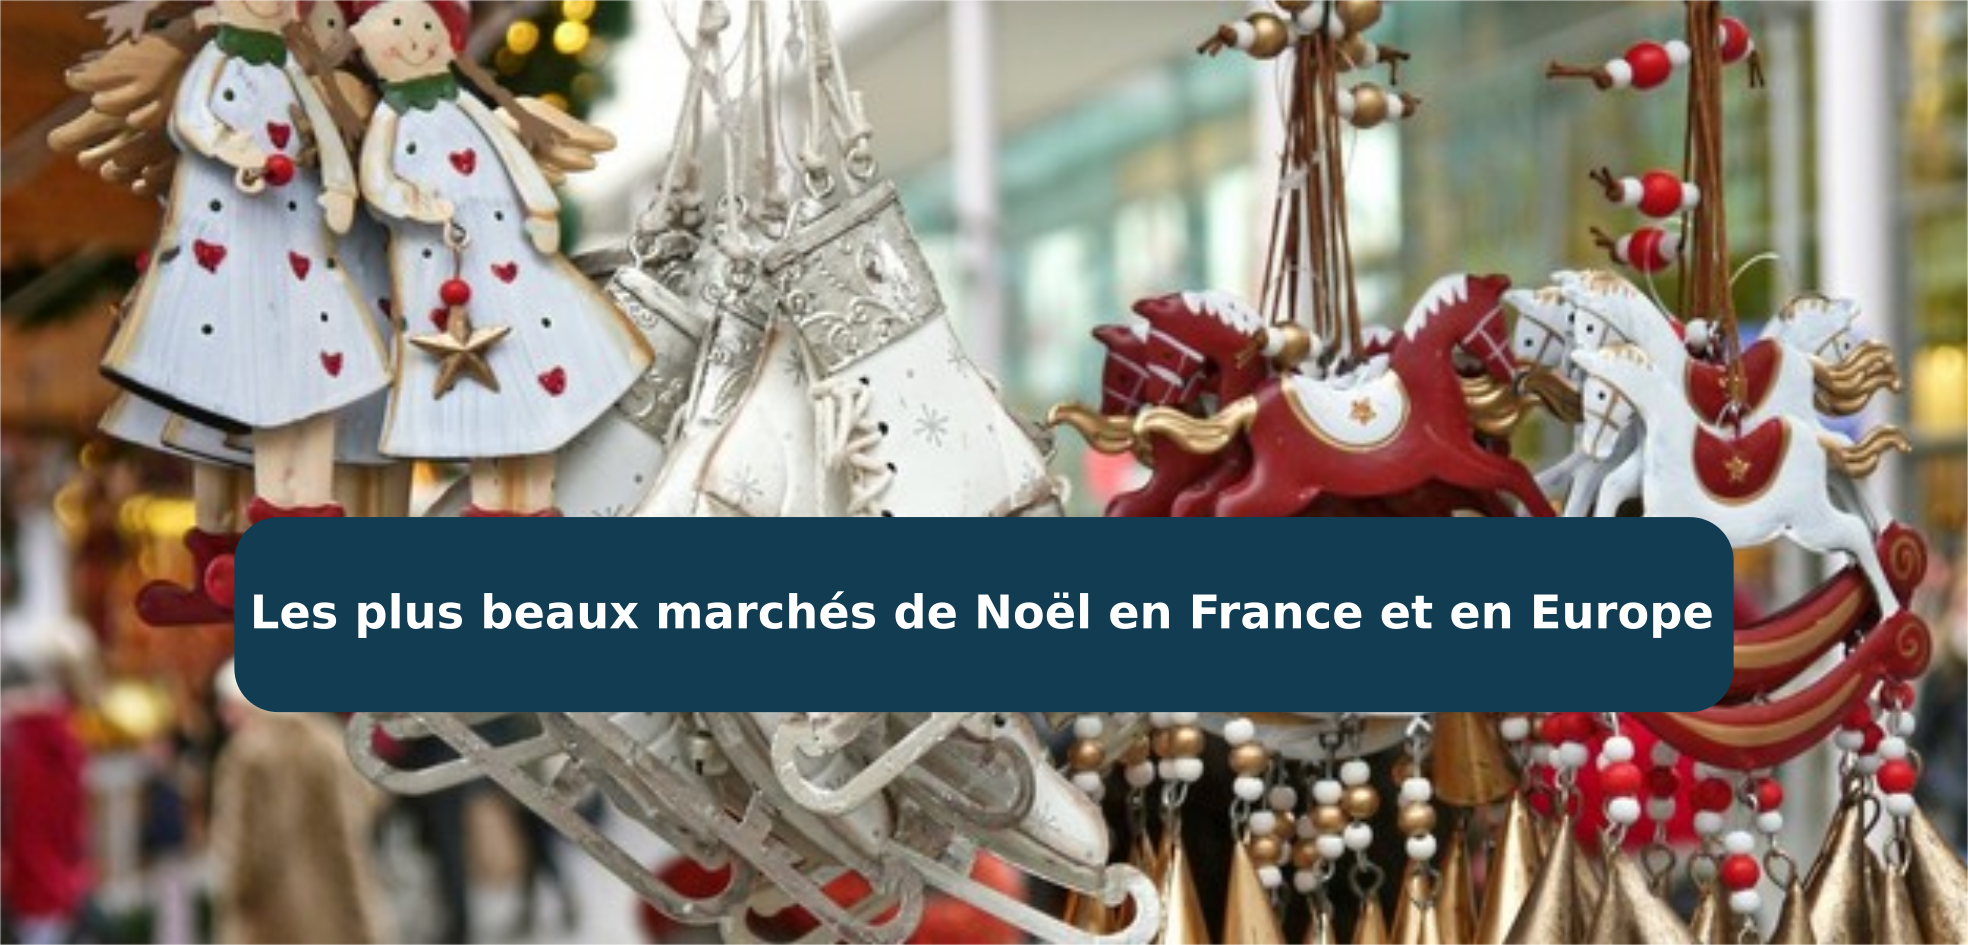 Les plus beaux marchés de noël en France et en Europe